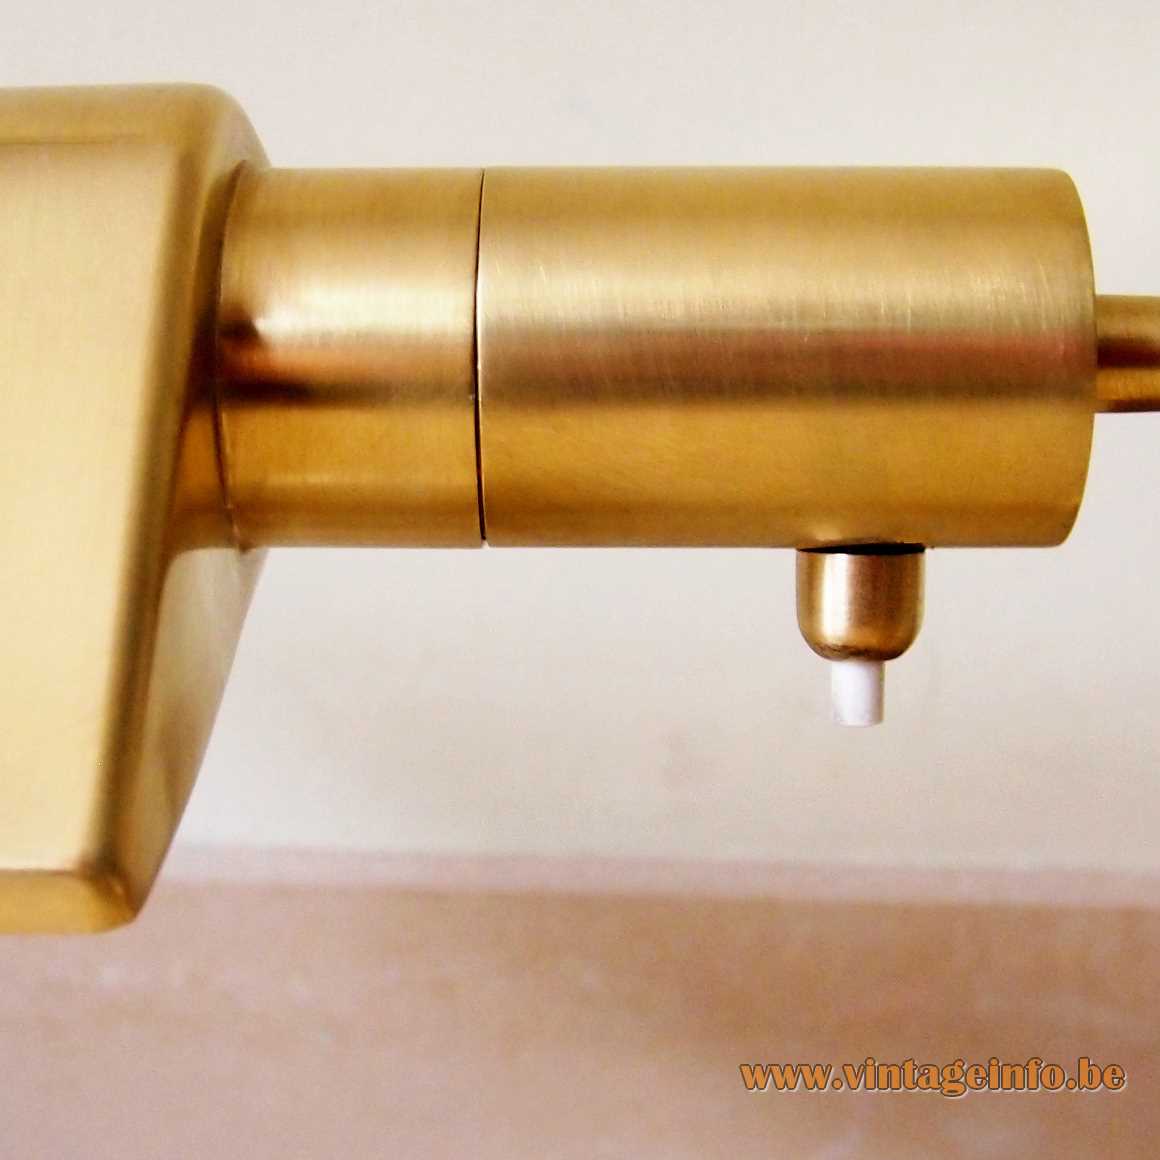 S.A. Boulanger brass desk lamp cylinder base curved rod triangular prism lampshade E27 socket MCM 1970s 1980s